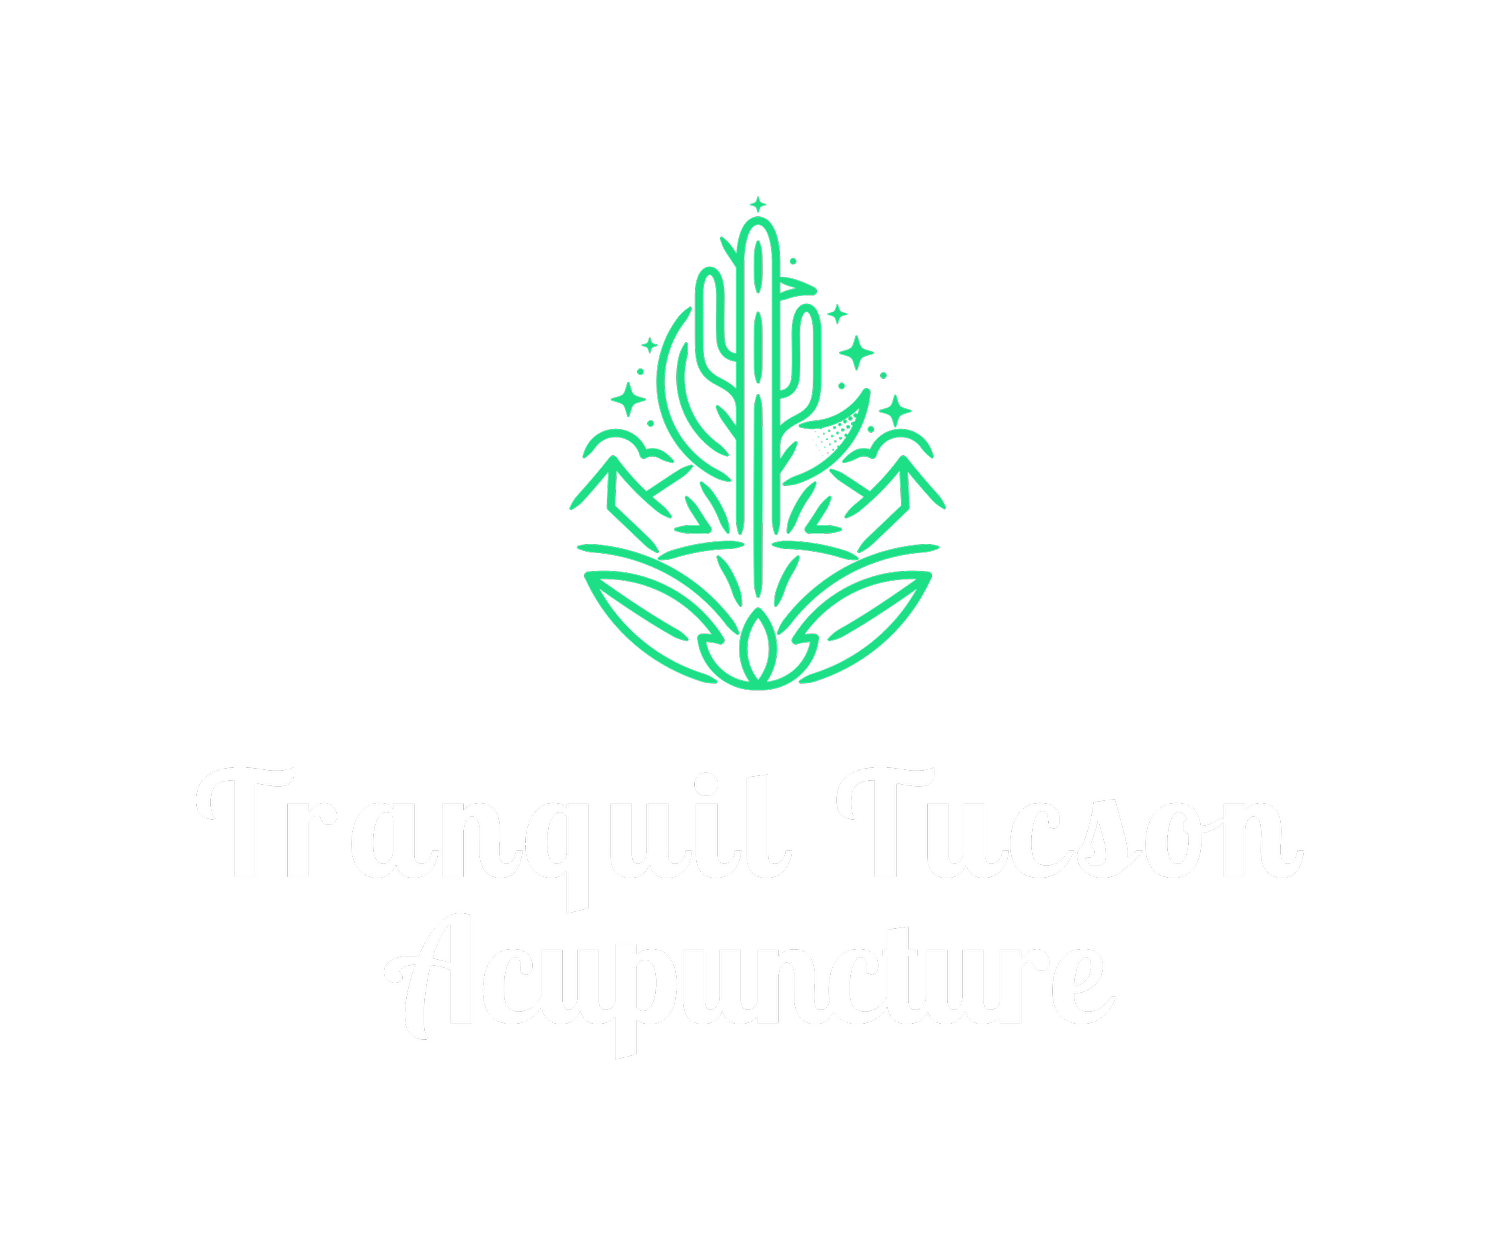 Tranquil Tucson Acupuncture